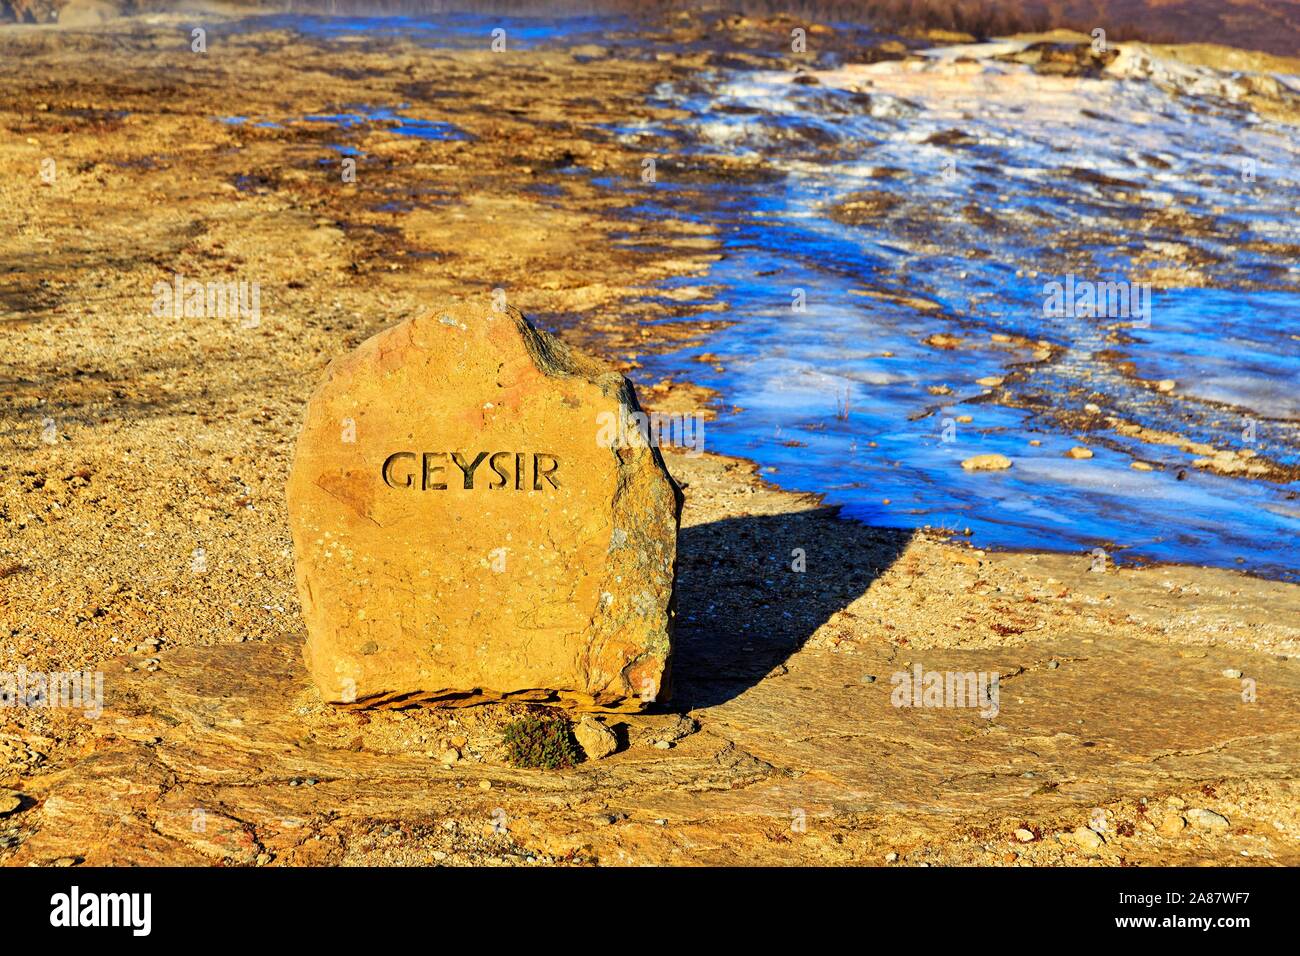 La pierre rouge avec l'inscription Geysir, à côté d'une surface d'eau gelés, zone à haute température, de Haukadalur, cercle d'Or le sud de l'Islande, Islande Banque D'Images